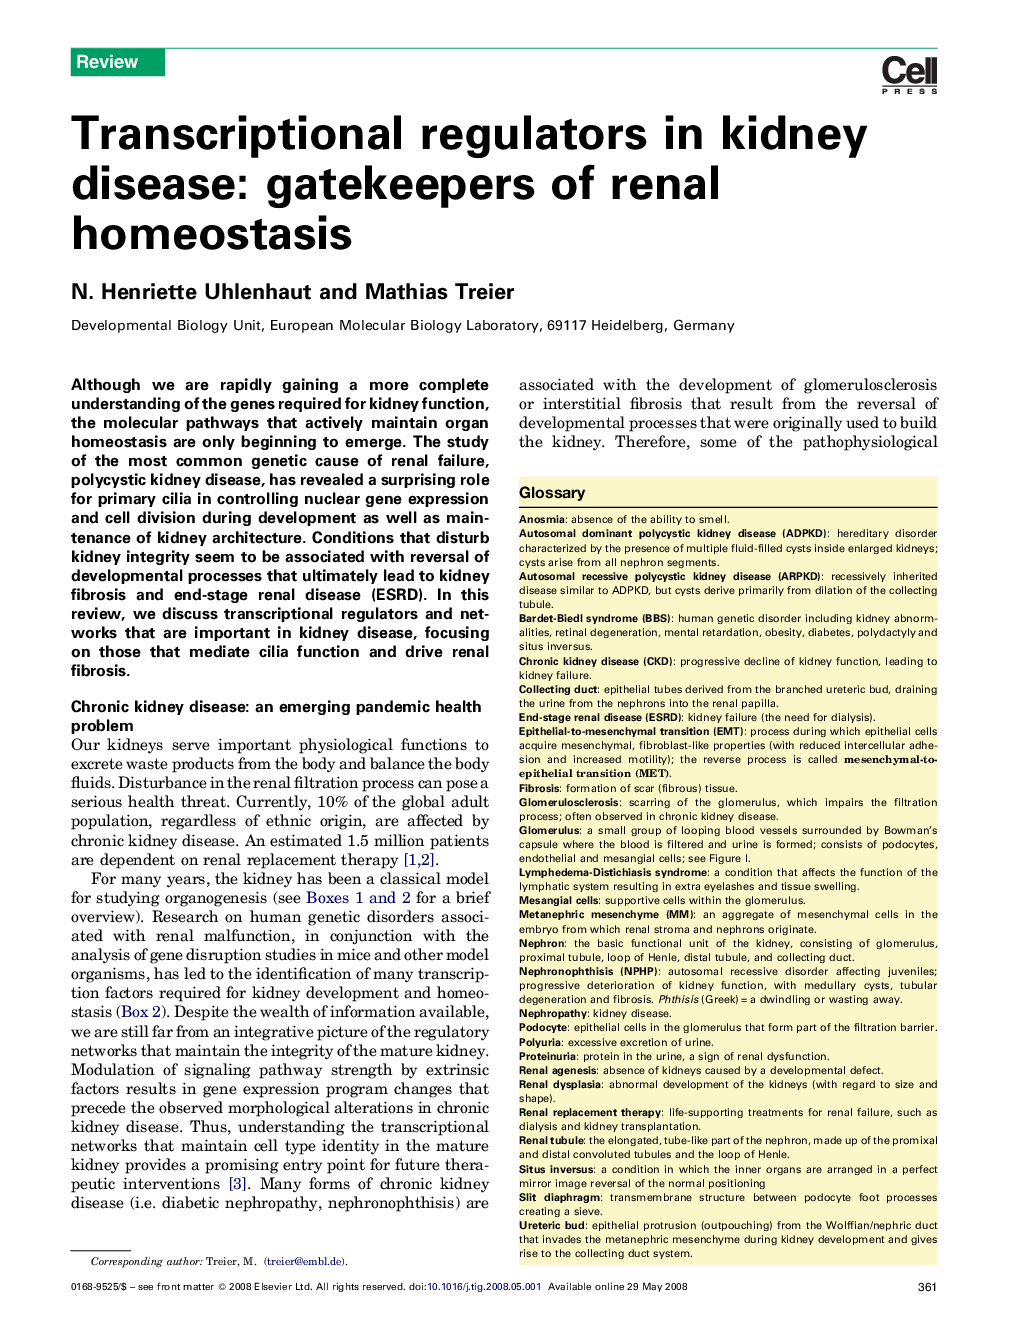 Transcriptional regulators in kidney disease: gatekeepers of renal homeostasis